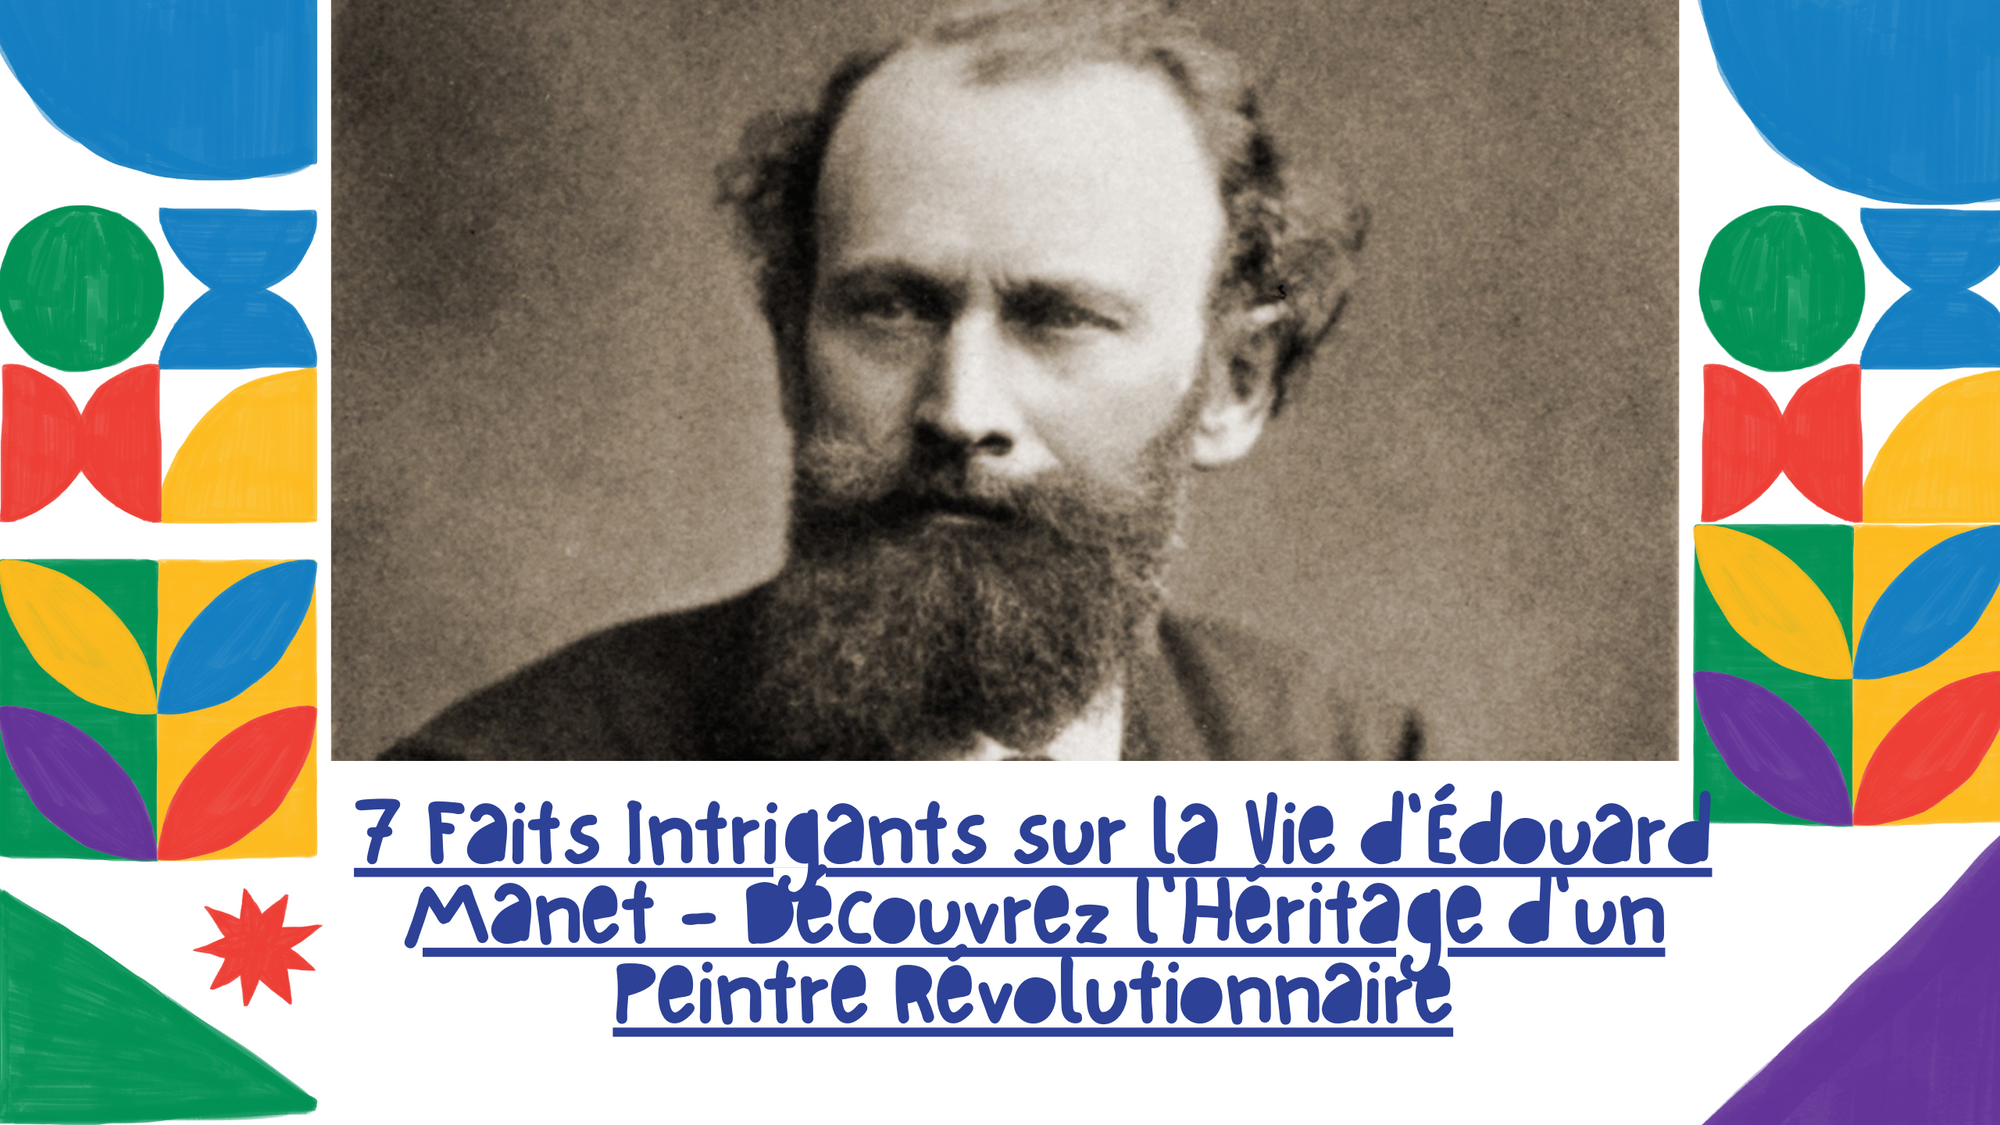 7 Faits Intrigants sur la Vie d'Édouard Manet - Découvrez l'Héritage d'un Peintre Révolutionnaire